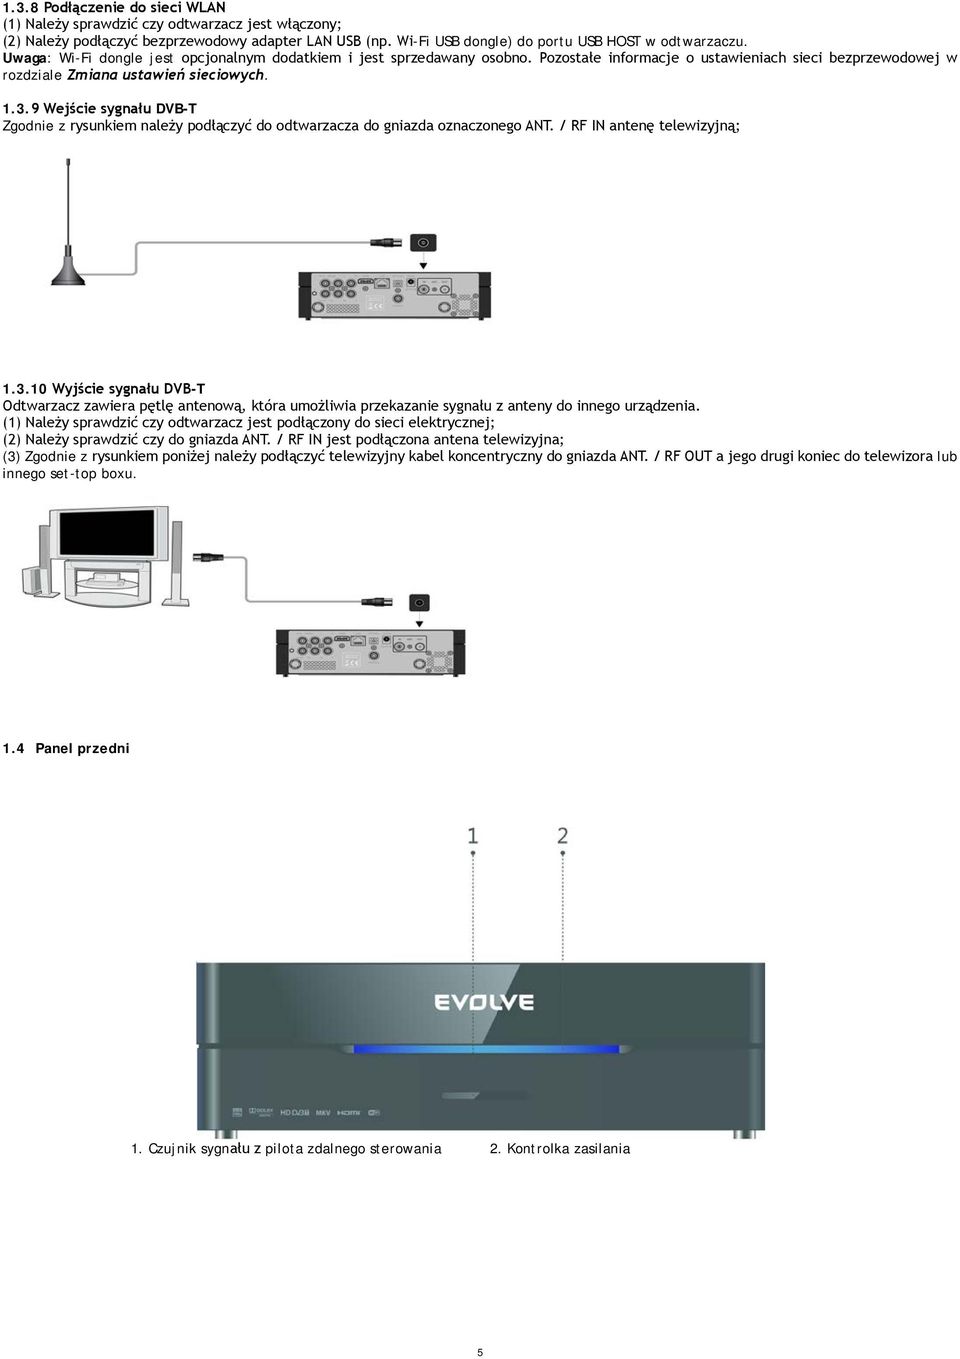 9 Wejście sygnału DVB-T Zgodnie z rysunkiem należy podłączyć do odtwarzacza do gniazda oznaczonego ANT. / RF IN antenę telewizyjną; 1.3.